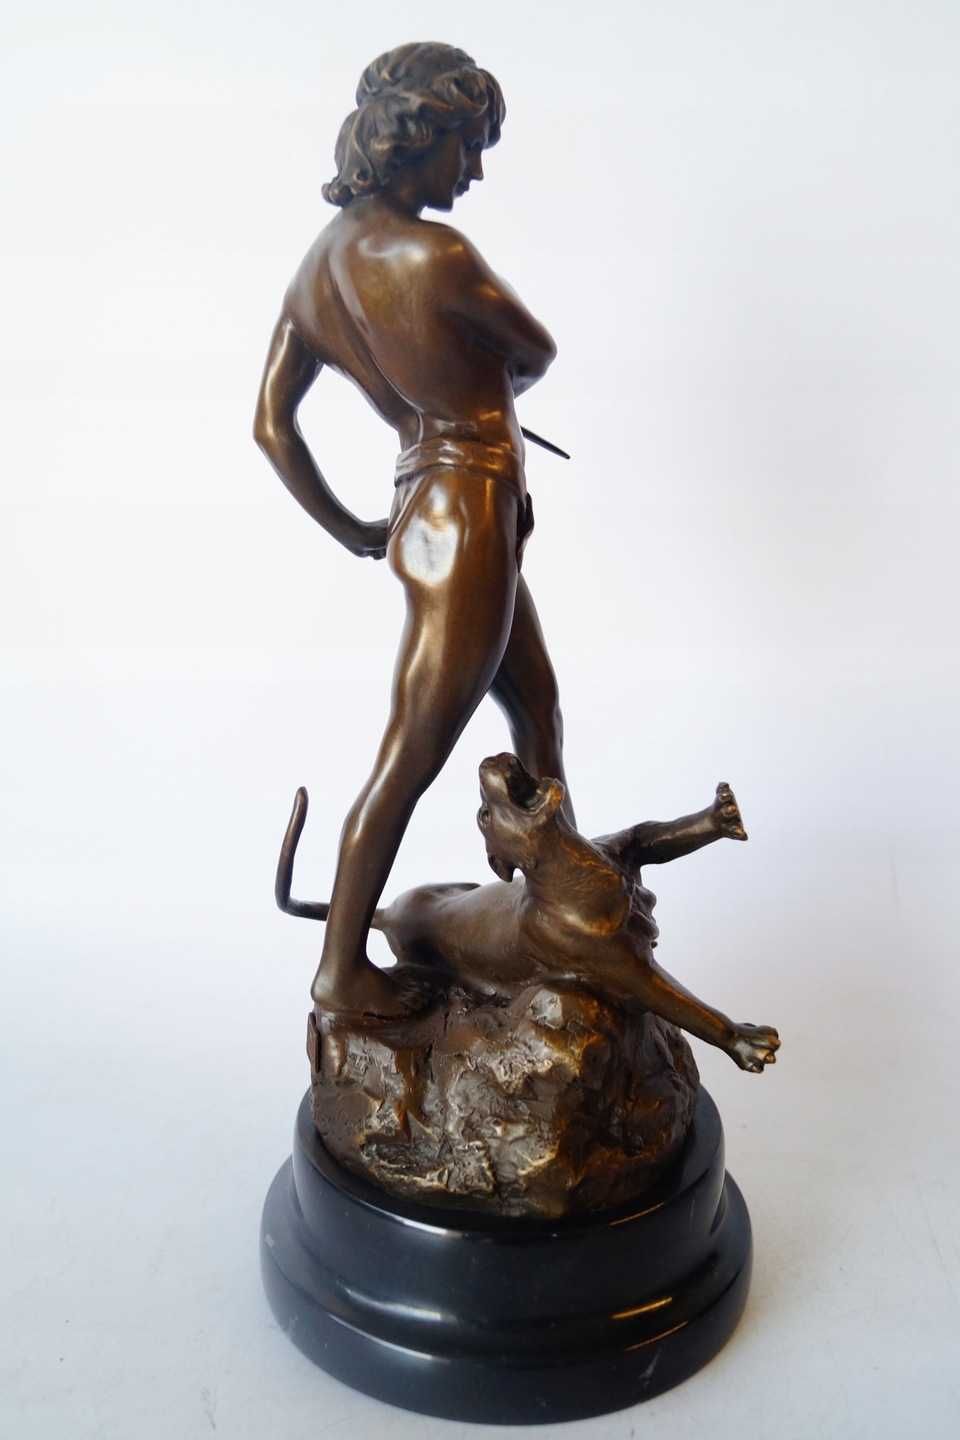 Walczący z pumą rzeźba z brązu wg Loys potet